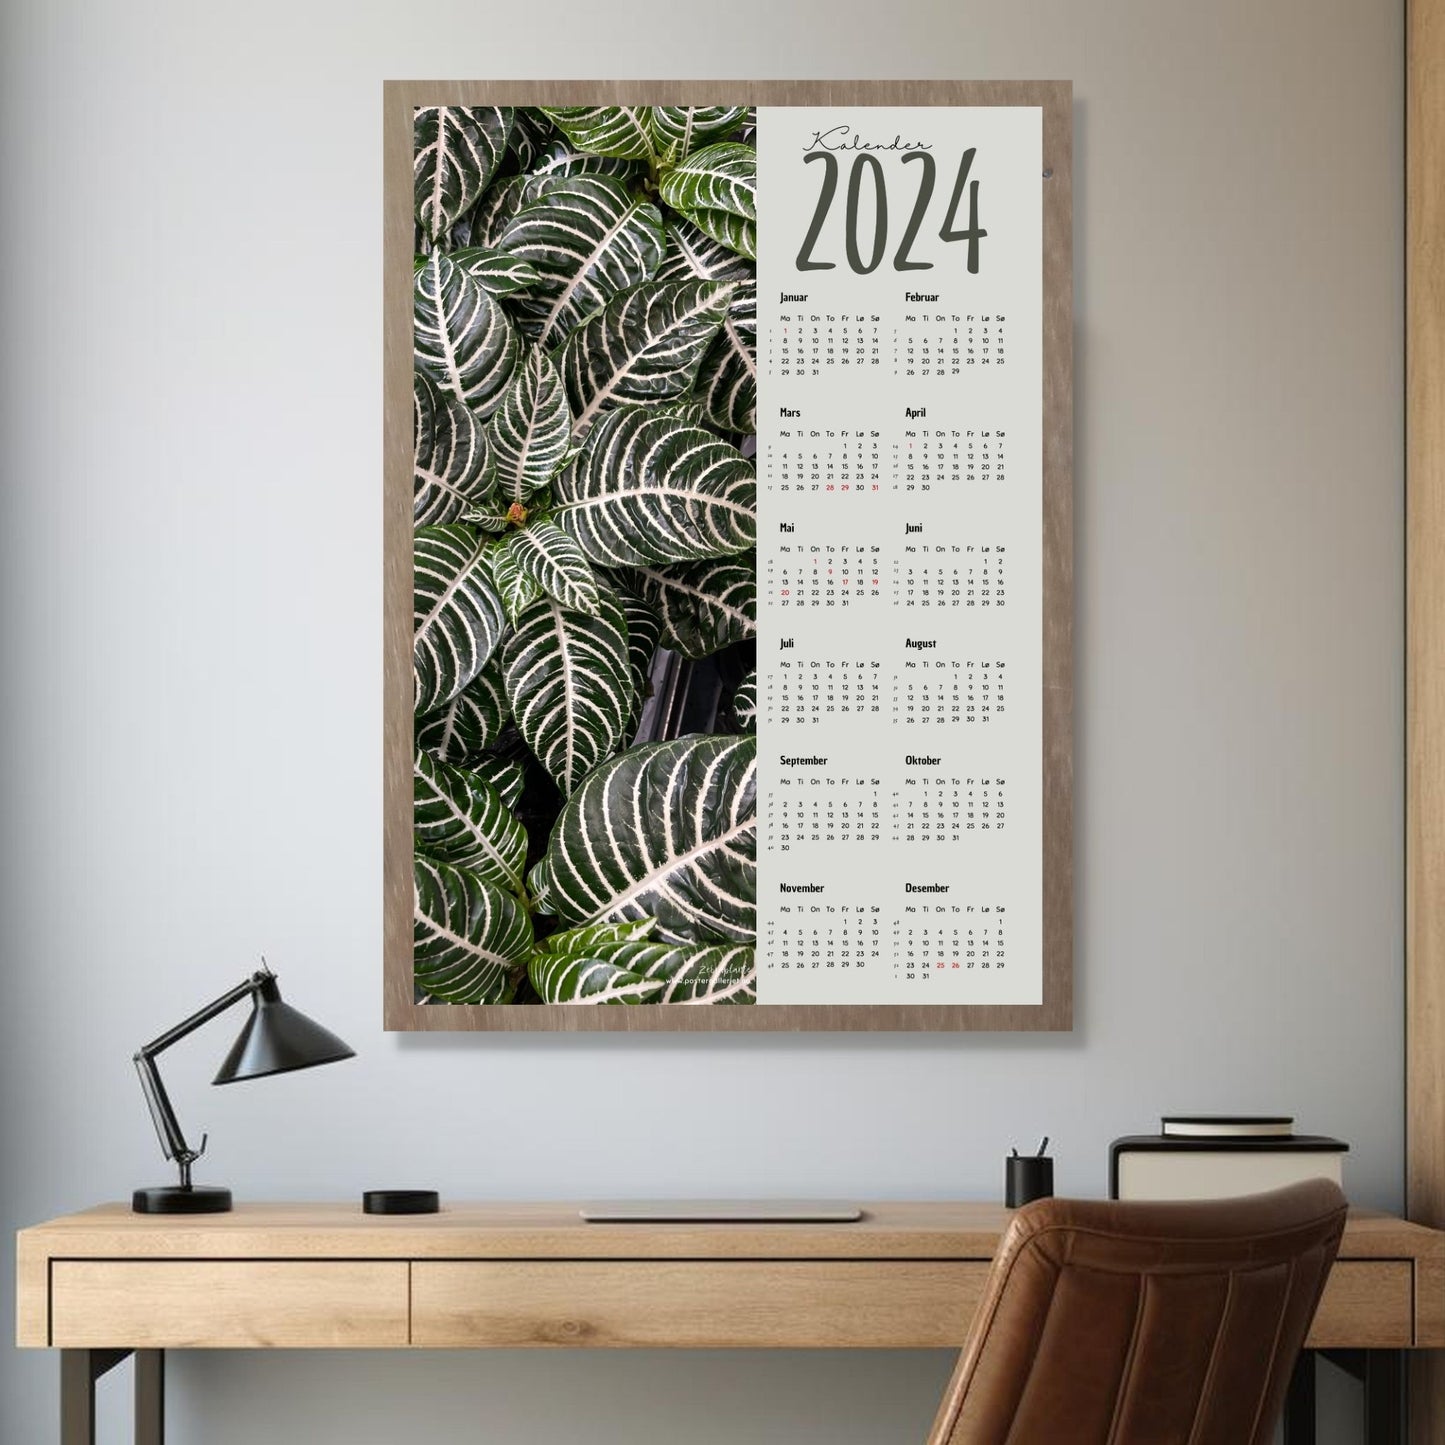 Kalender 2024 i grafisk print med fotomotiv. Halve vertikale side har et fotomotiv av en Zebra grønnplante. Den andre halvdelen er påført 12 måneder med ukenummer og anmerket høytidsdager. Miljøbilde av kalender i eikeramme som henger på en vegg.